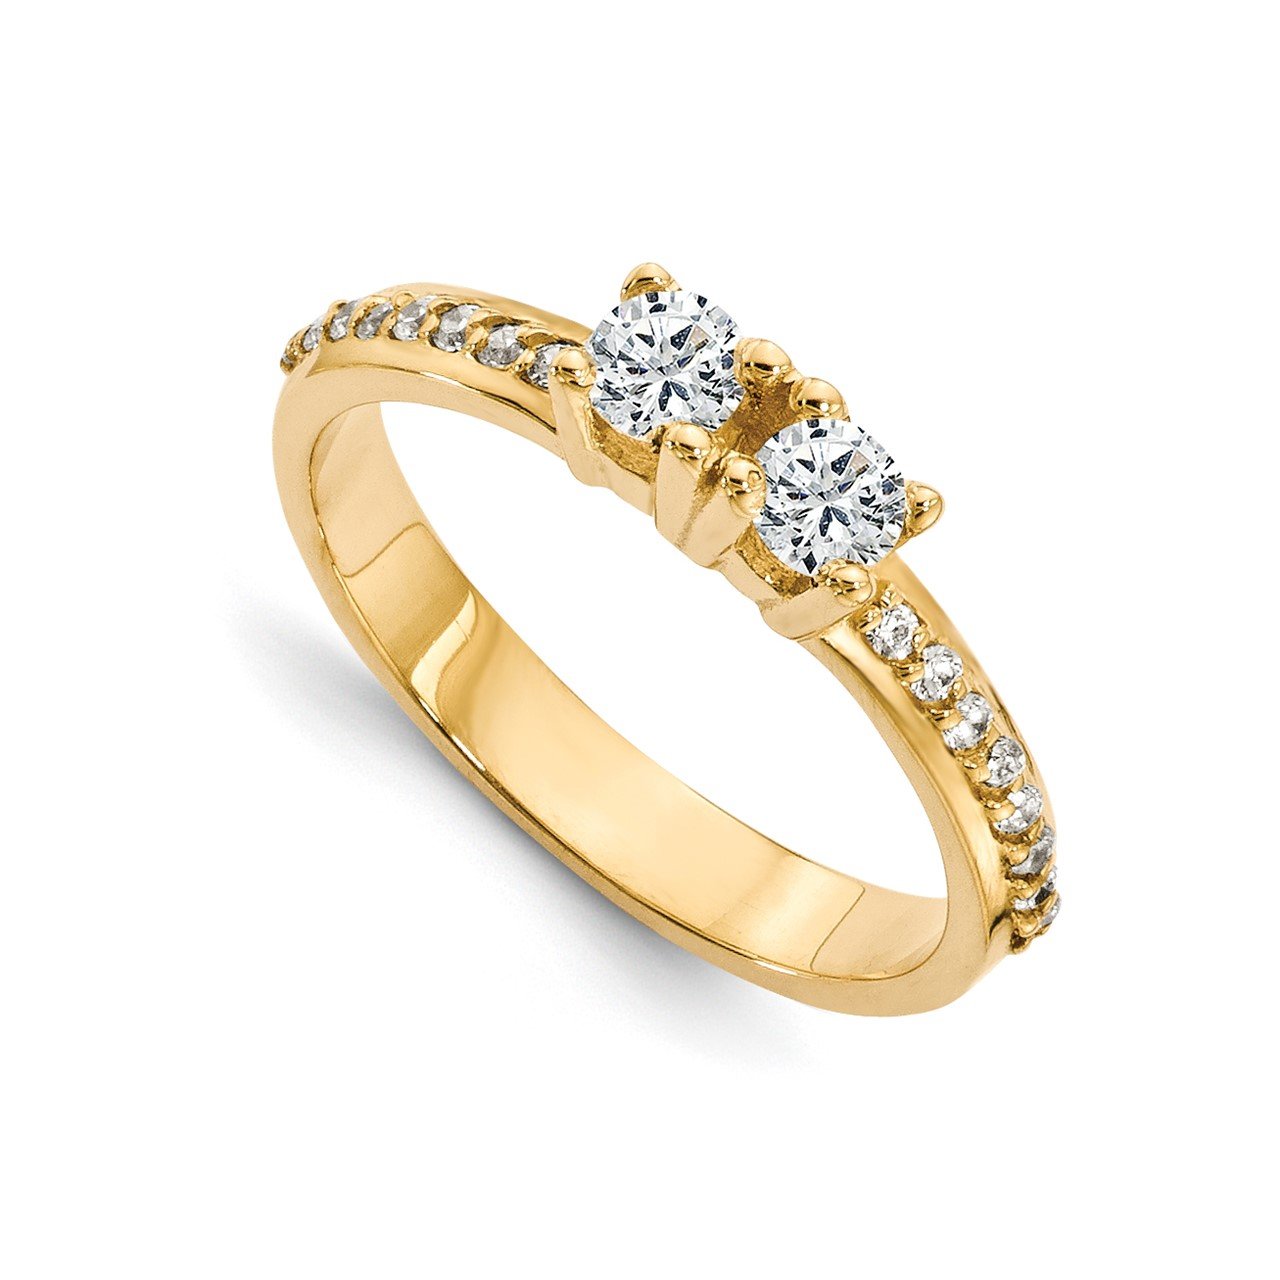 14ky AAA Diamond 2-stone Ring Semi-Mount - 4.2 mm center stones